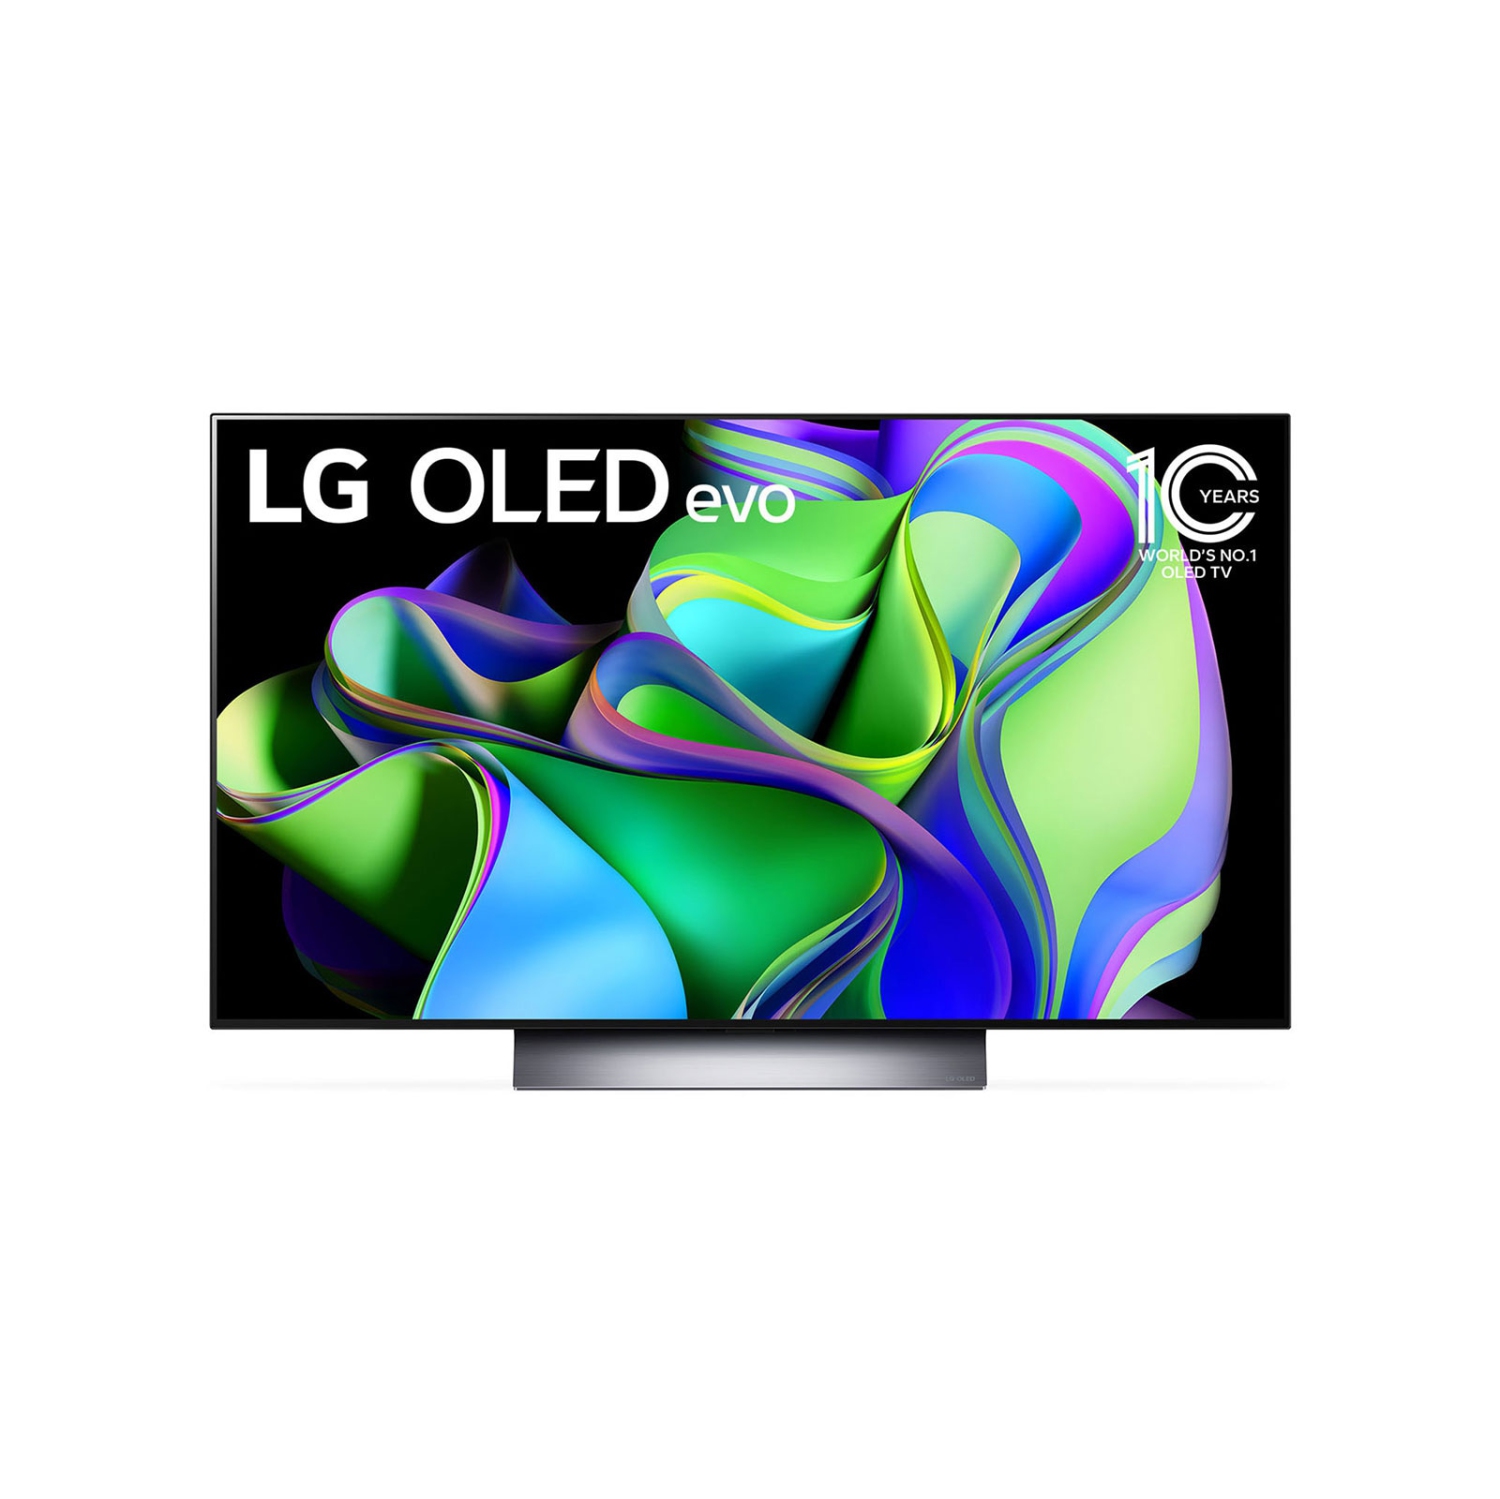 LG 55-inch OLED 4K Smart TV OLED55C3PUA Open Box 10/10